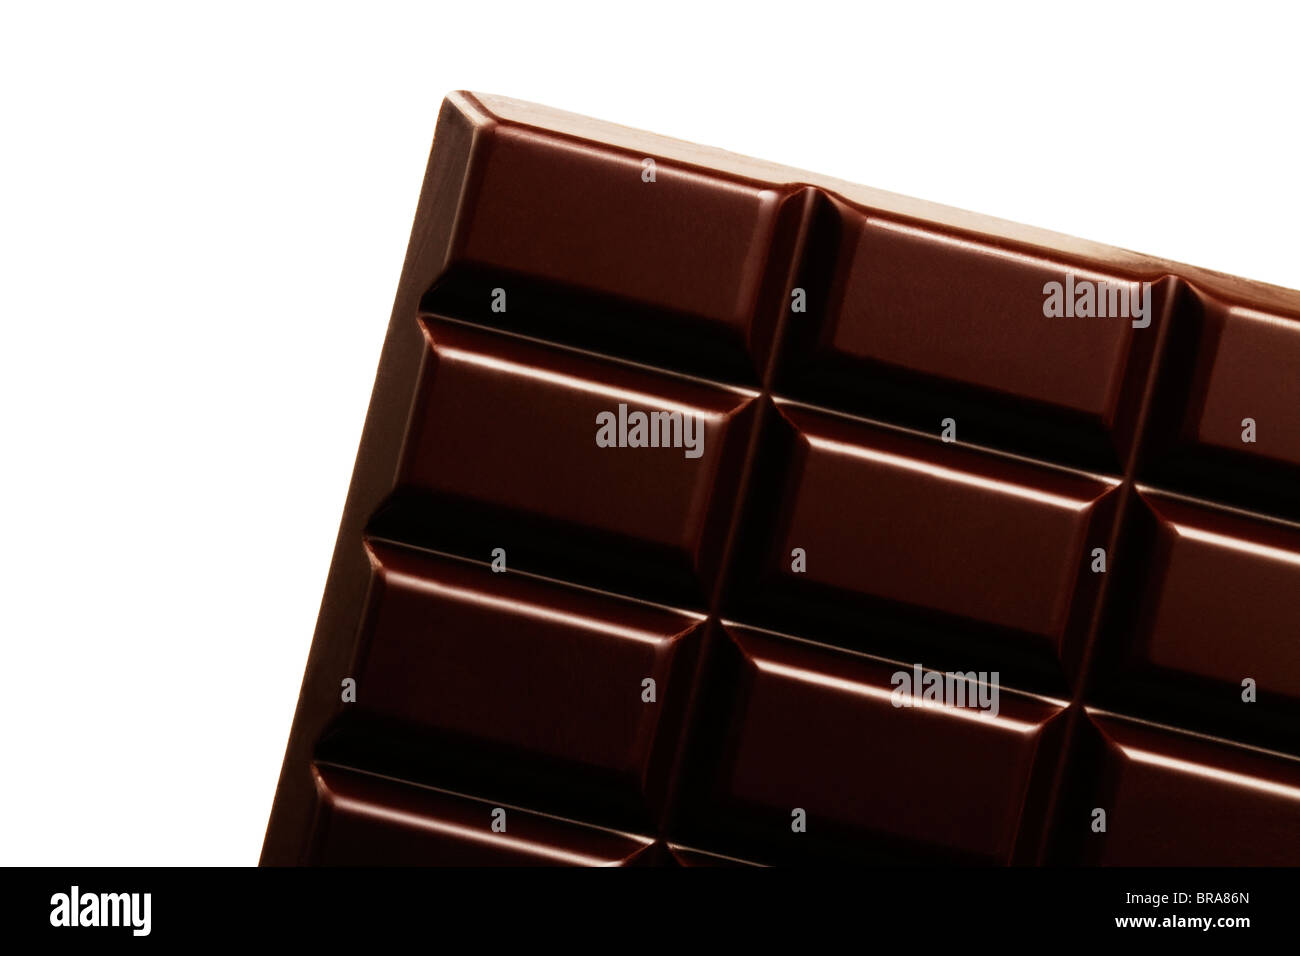 plain chocolate bar diagonal on white background Stock Photo